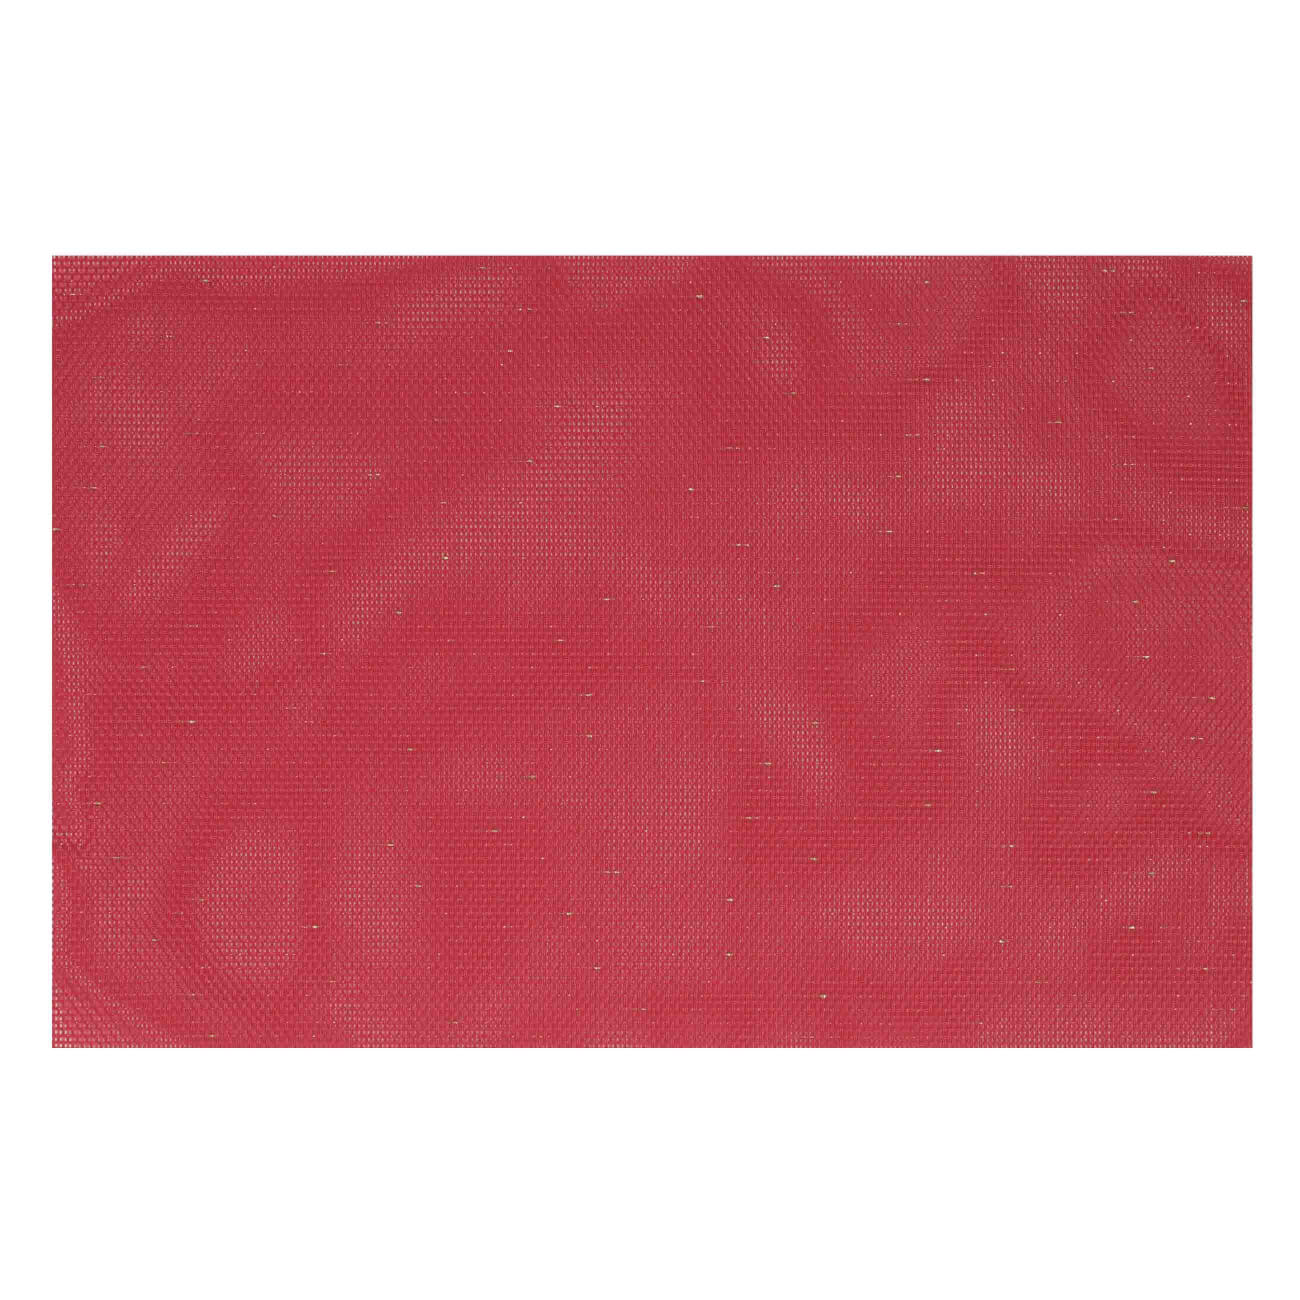 Салфетка под приборы, 30х45 см, ПВХ/полиэстер, прямоугольная, красная, Solid красная угроза панов в